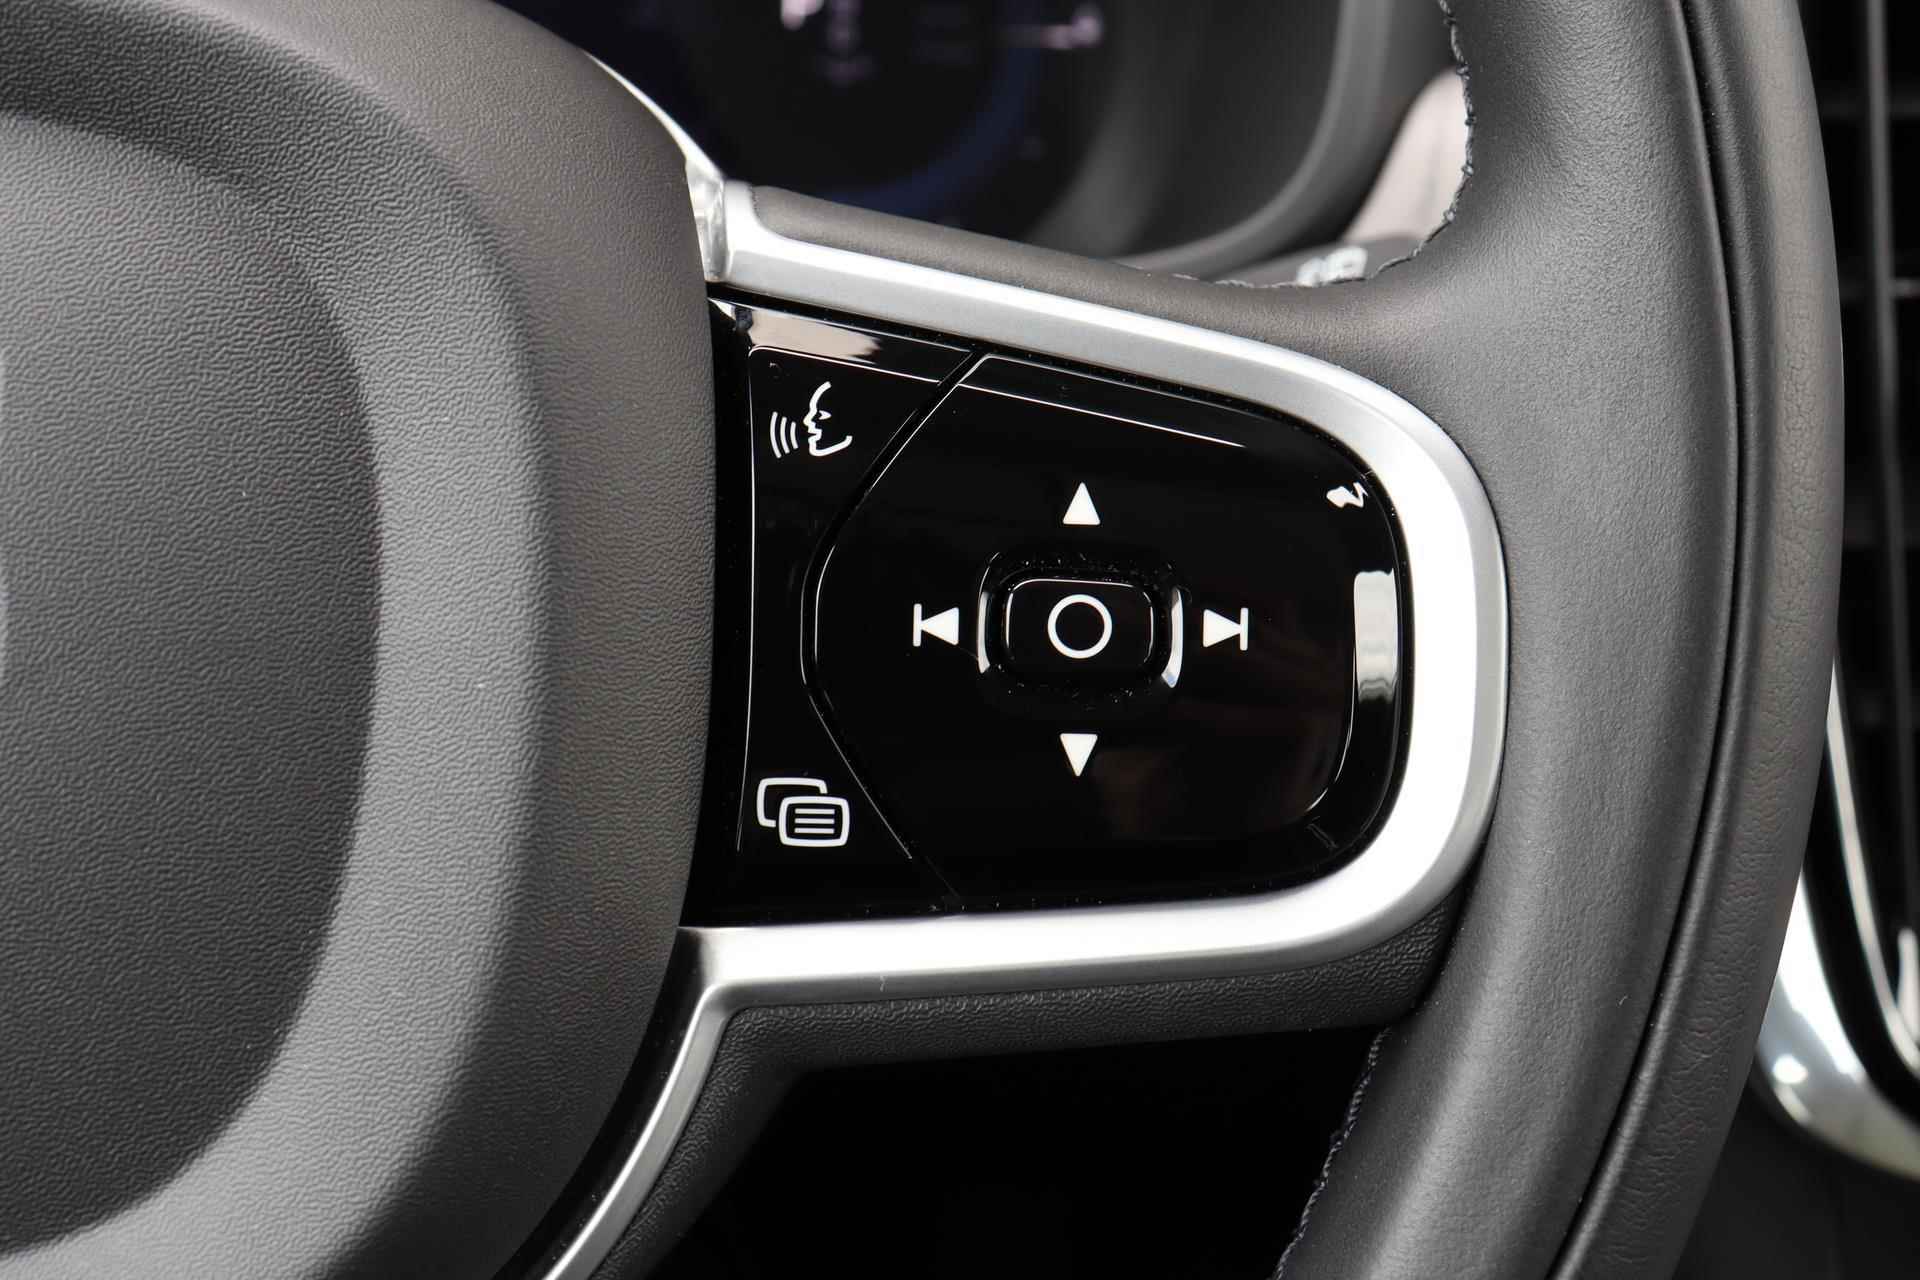 Volvo V90 T6 AWD Recharge Inscription - Panorama/schuifdak - IntelliSafe Assist & Surround - Harman/Kardon audio - Adaptieve LED koplampen - Parkeercamera achter - Verwarmde voorstoelen & stuur - Parkeersensoren voor & achter - Elektr. bedienb. voorstoelen met geheugen - Standkachel - 19' LMV - 17/33